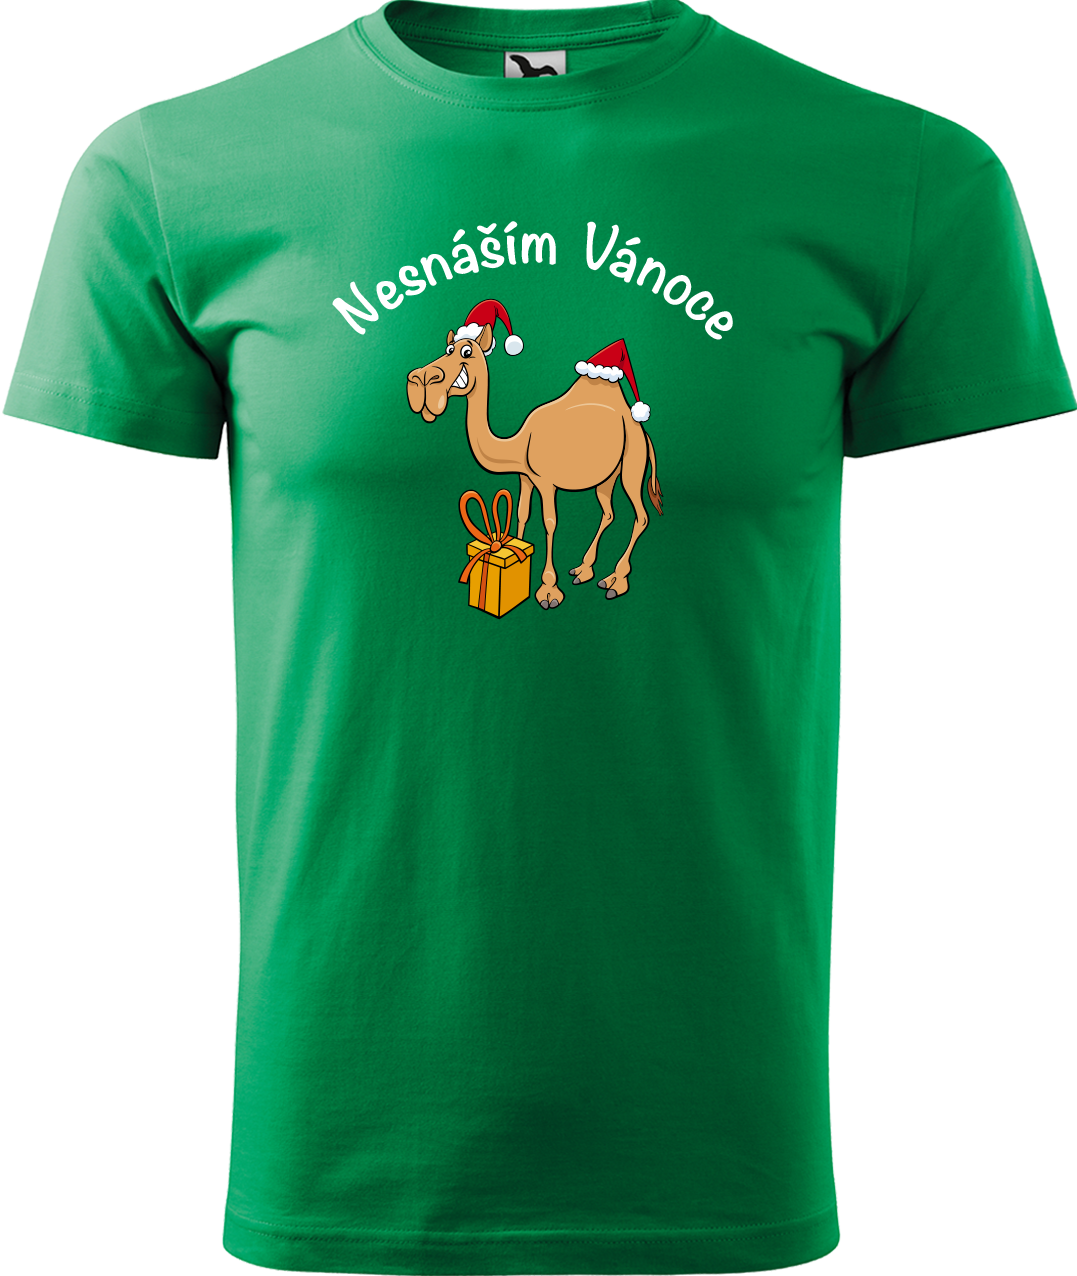 Pánské vánoční tričko - Nesnáším Vánoce Velikost: M, Barva: Středně zelená (16)